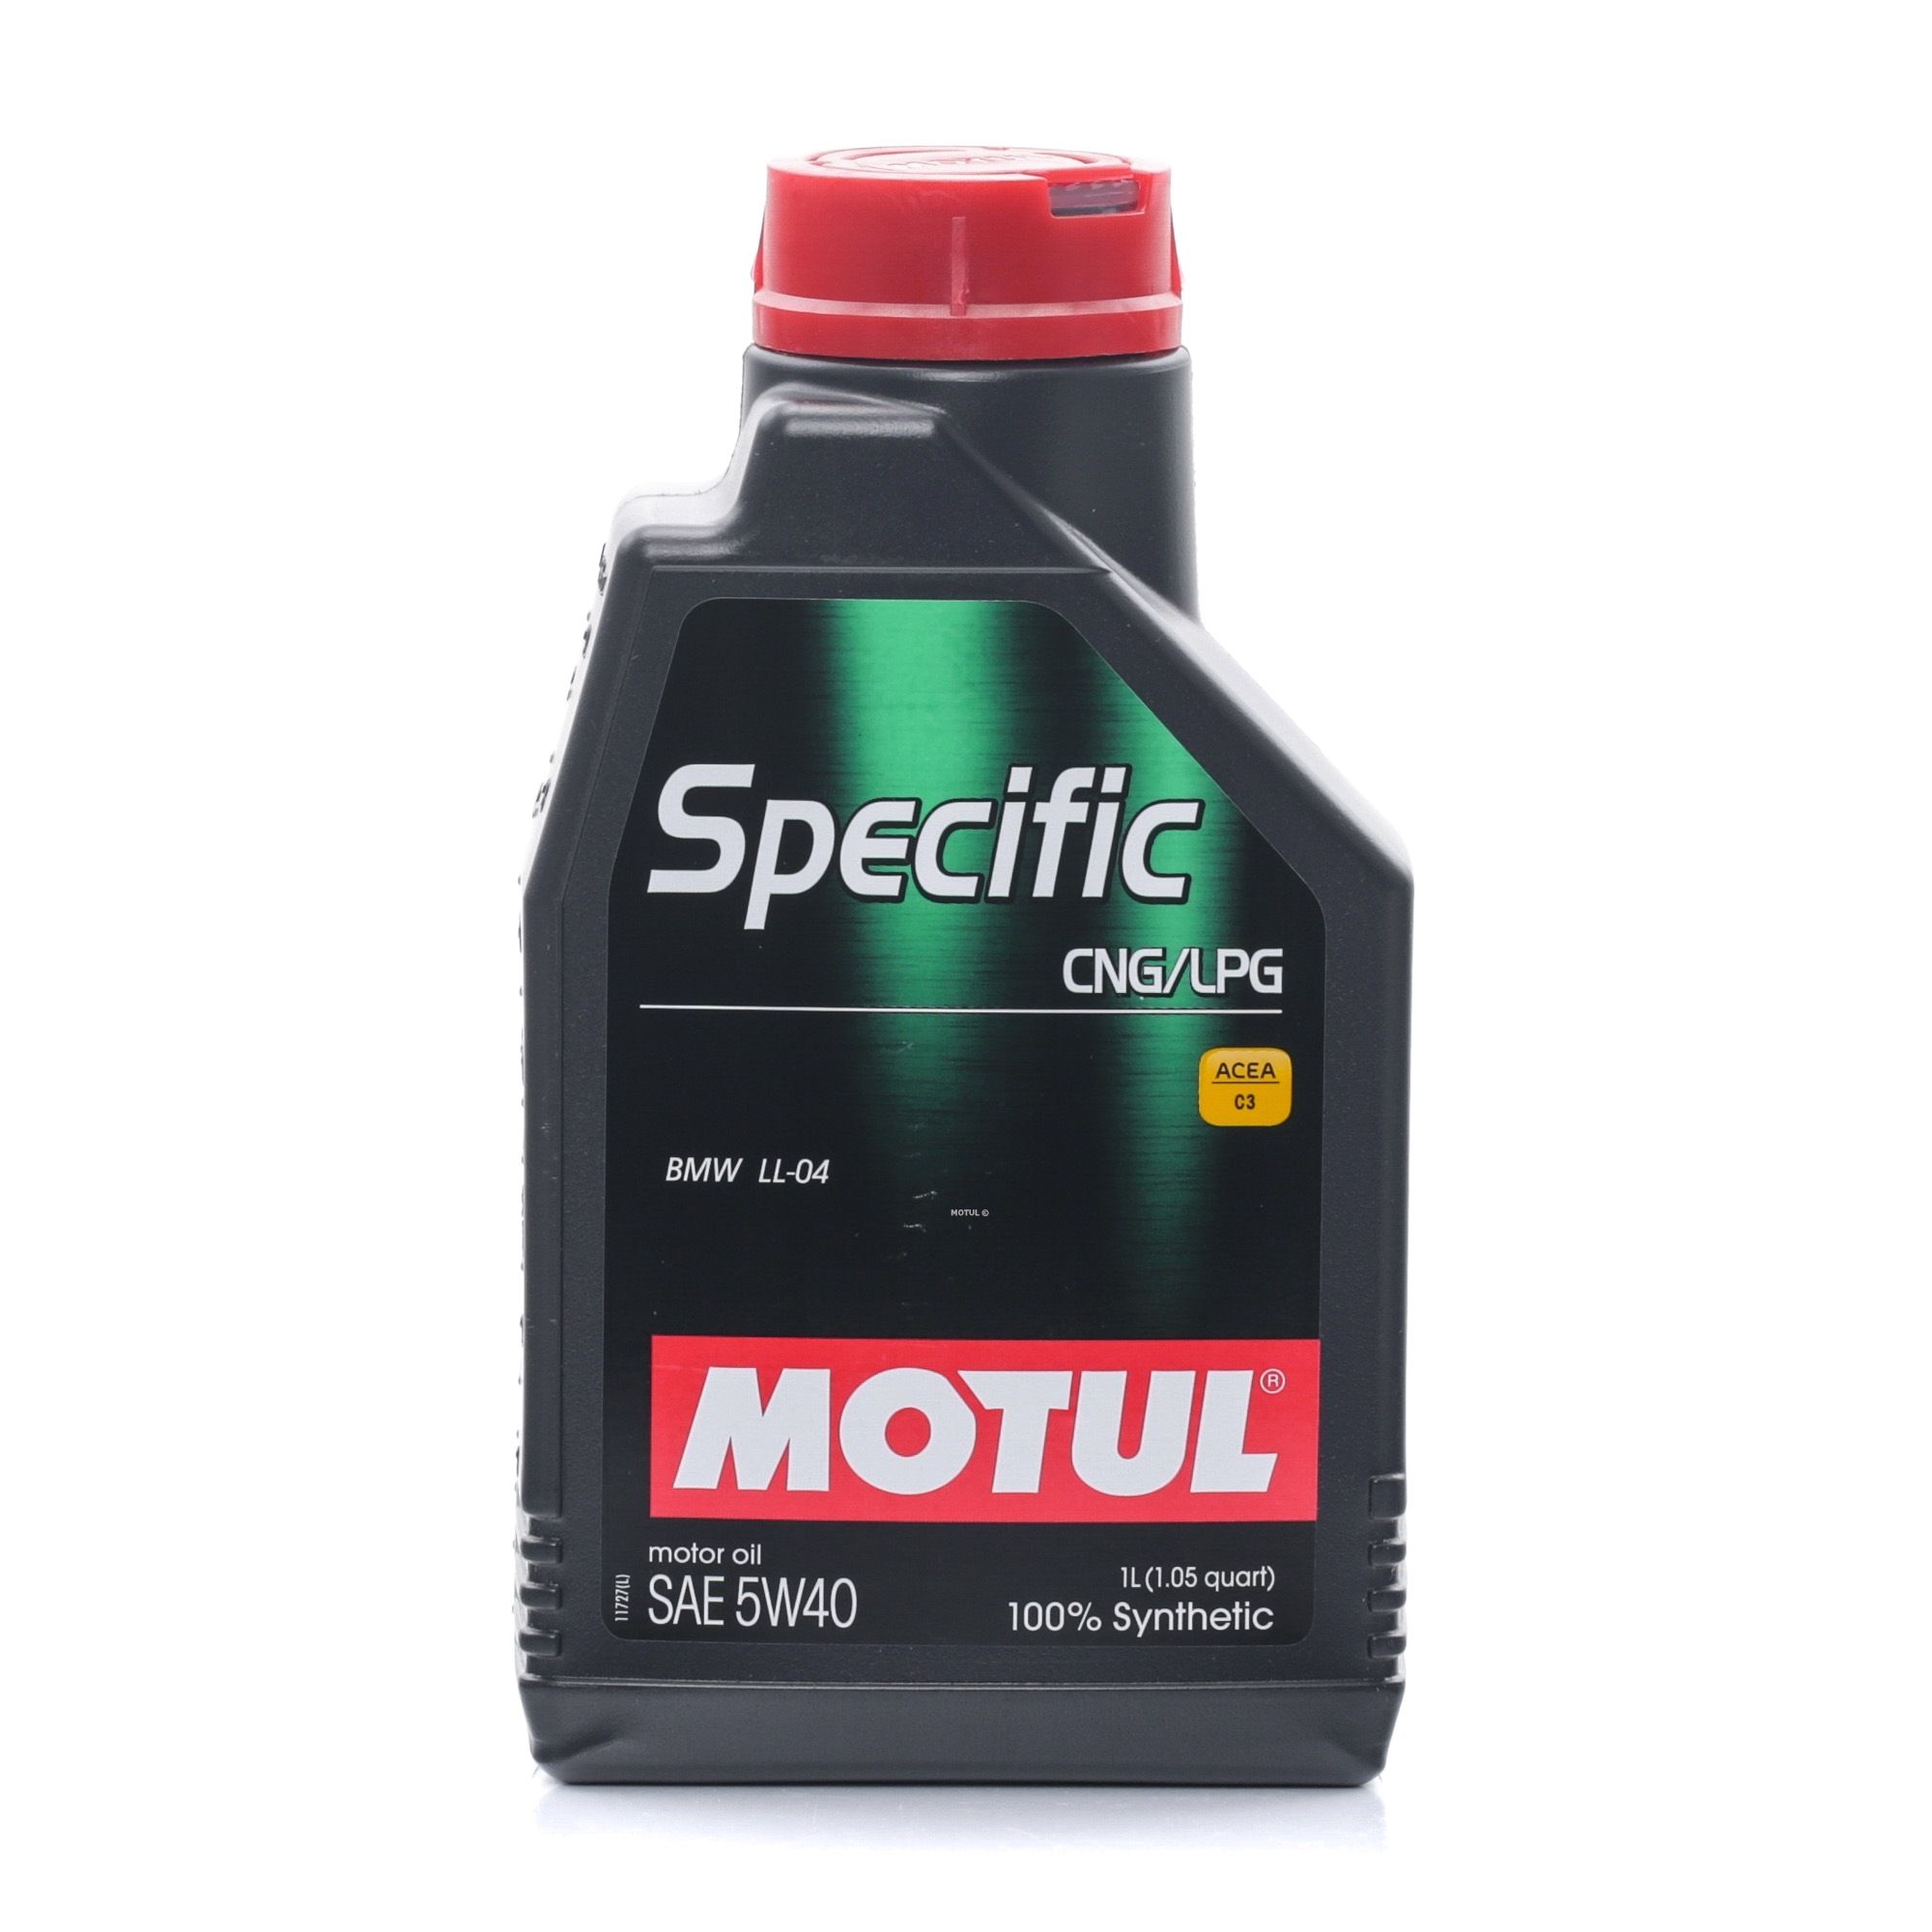 Motor oil ACEA C3 MOTUL - 101717 SPECIFIC, CNG/LPG